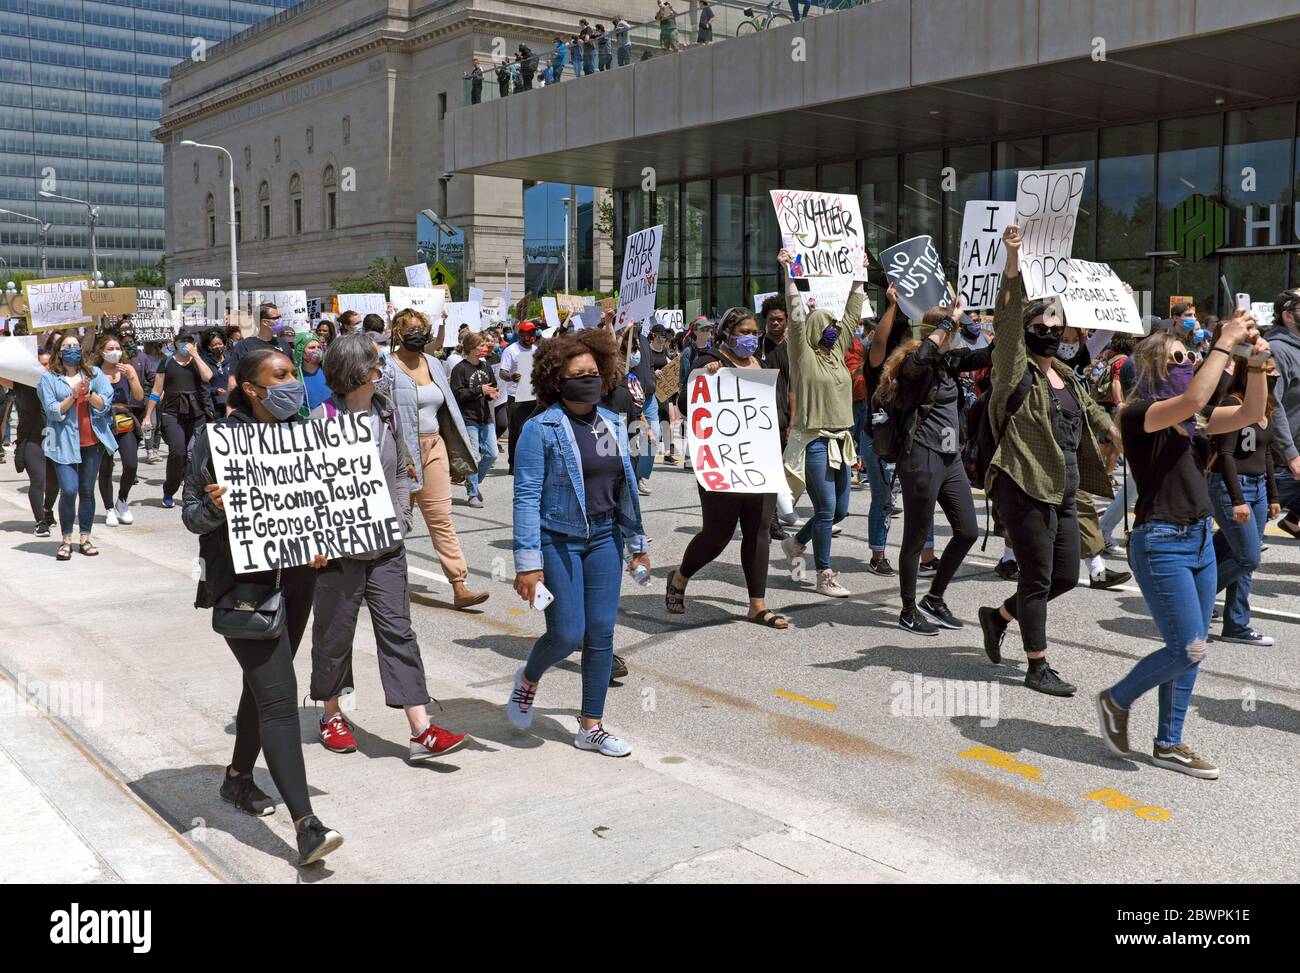 Black Lives Matter des manifestants défilent sur Lakeside Avenue dans le centre-ville de Cleveland, Ohio, États-Unis en prenant position contre le meurtre de Noirs aux États-Unis, aux mains de la police. La marche paisible a fini par se transformer en une émeute que la ville a appelée, ce qui a conduit le centre-ville à être verrouillé pendant près d'une semaine. Banque D'Images